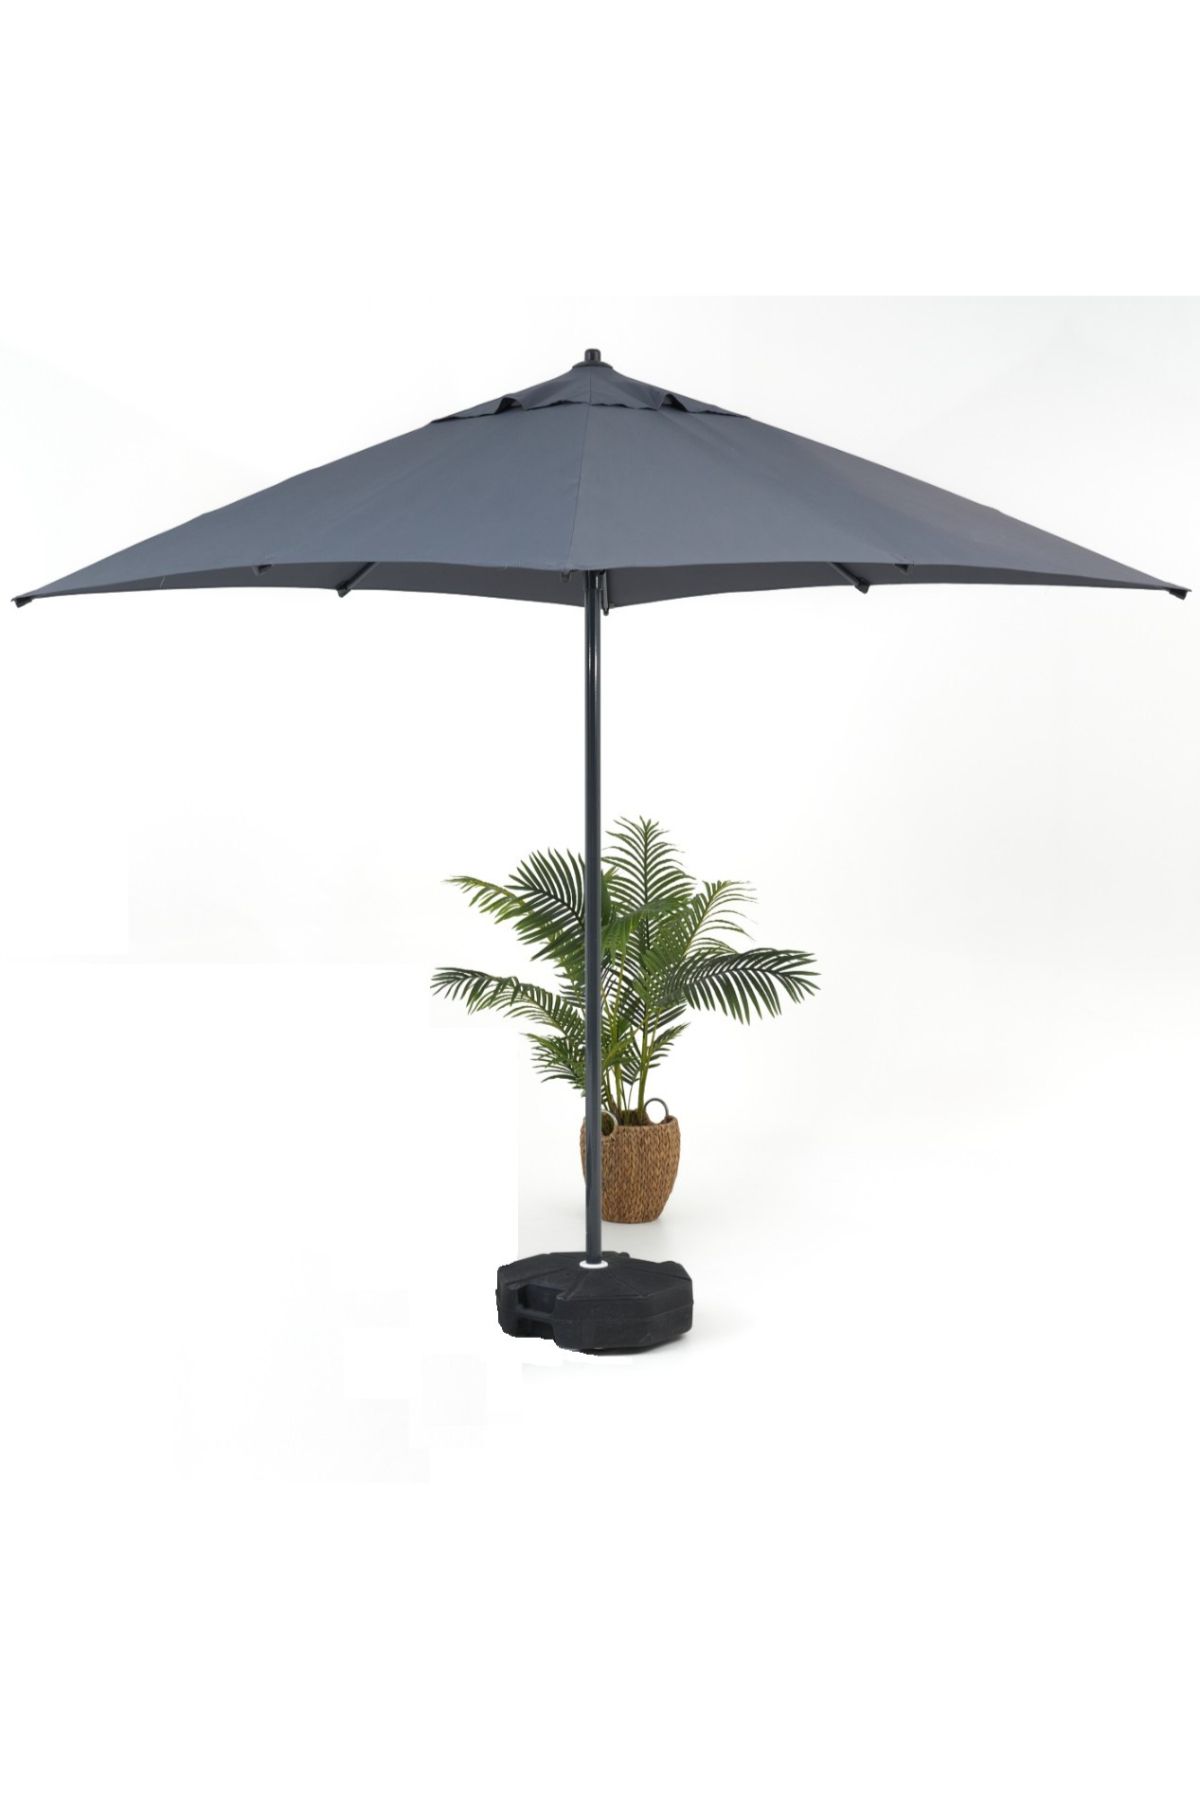 Divona Home Mini Pro Bahçe ve Balkon Şemsiyesi (210×210 cm)